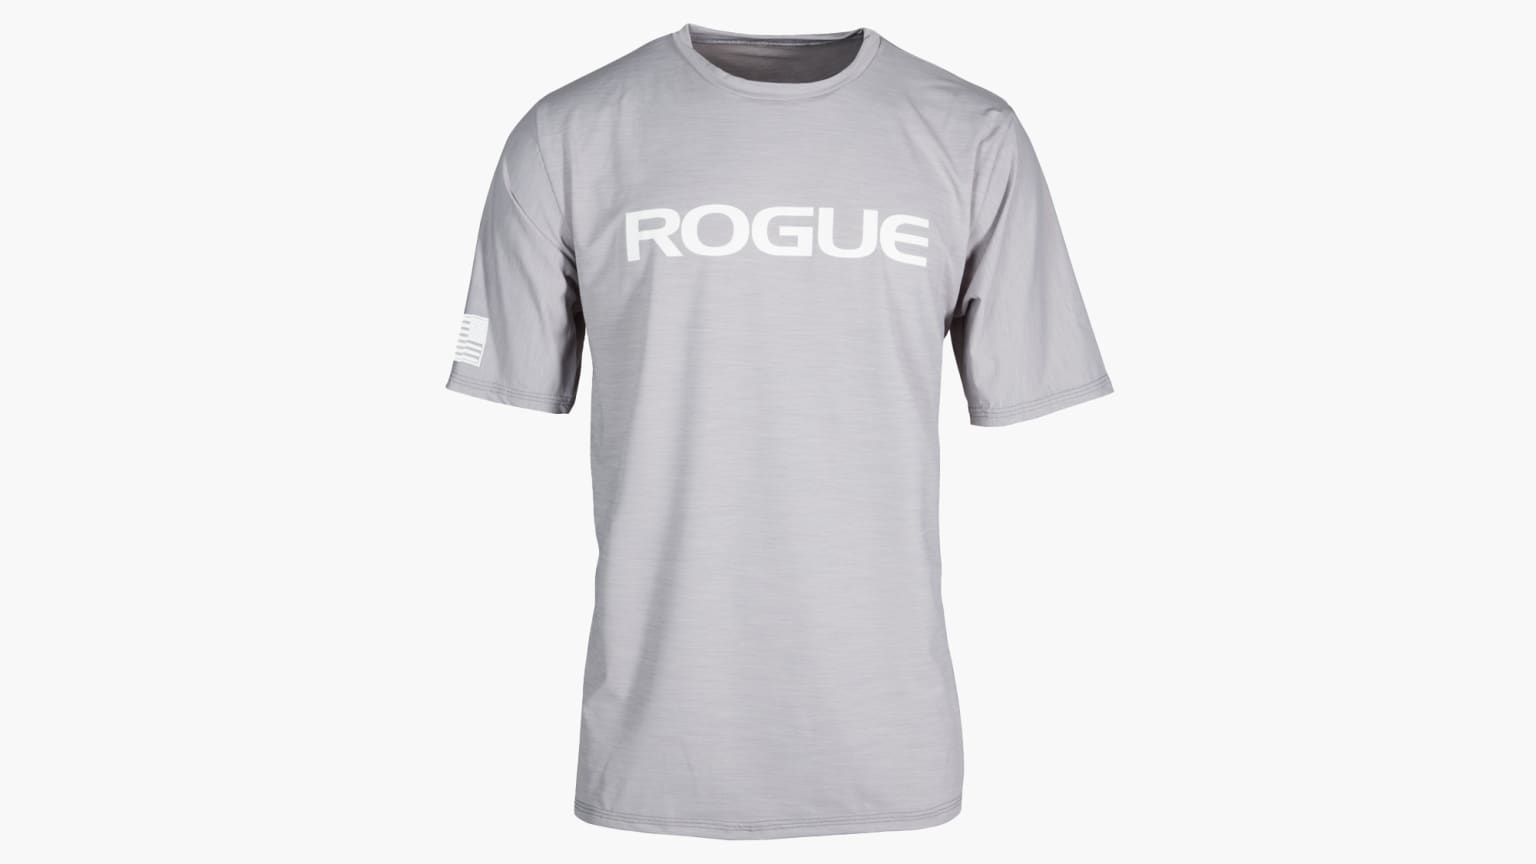 Rogue Men's Performance Sun Shirt - M - Gray